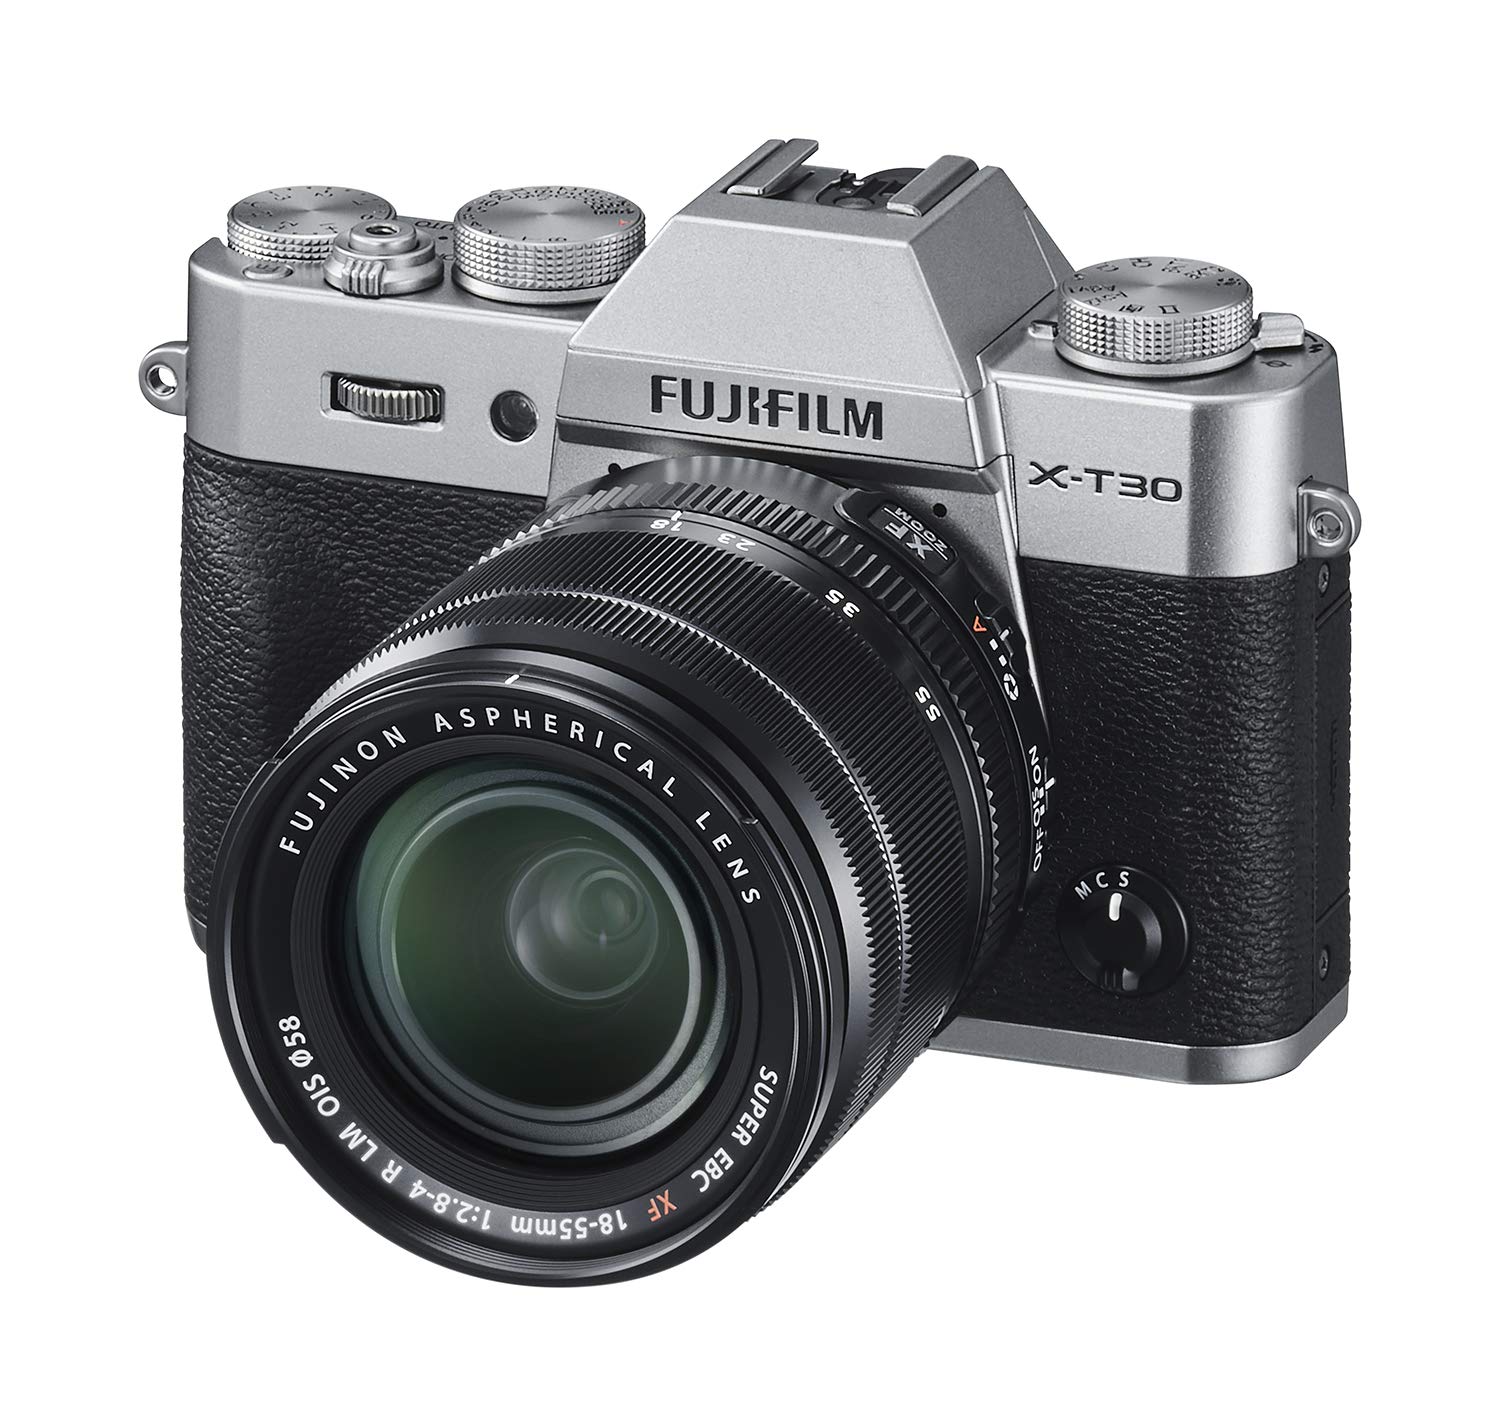 Fujifilm Aparat bezlusterkowy  X-T30 z obiektywem XF 18...